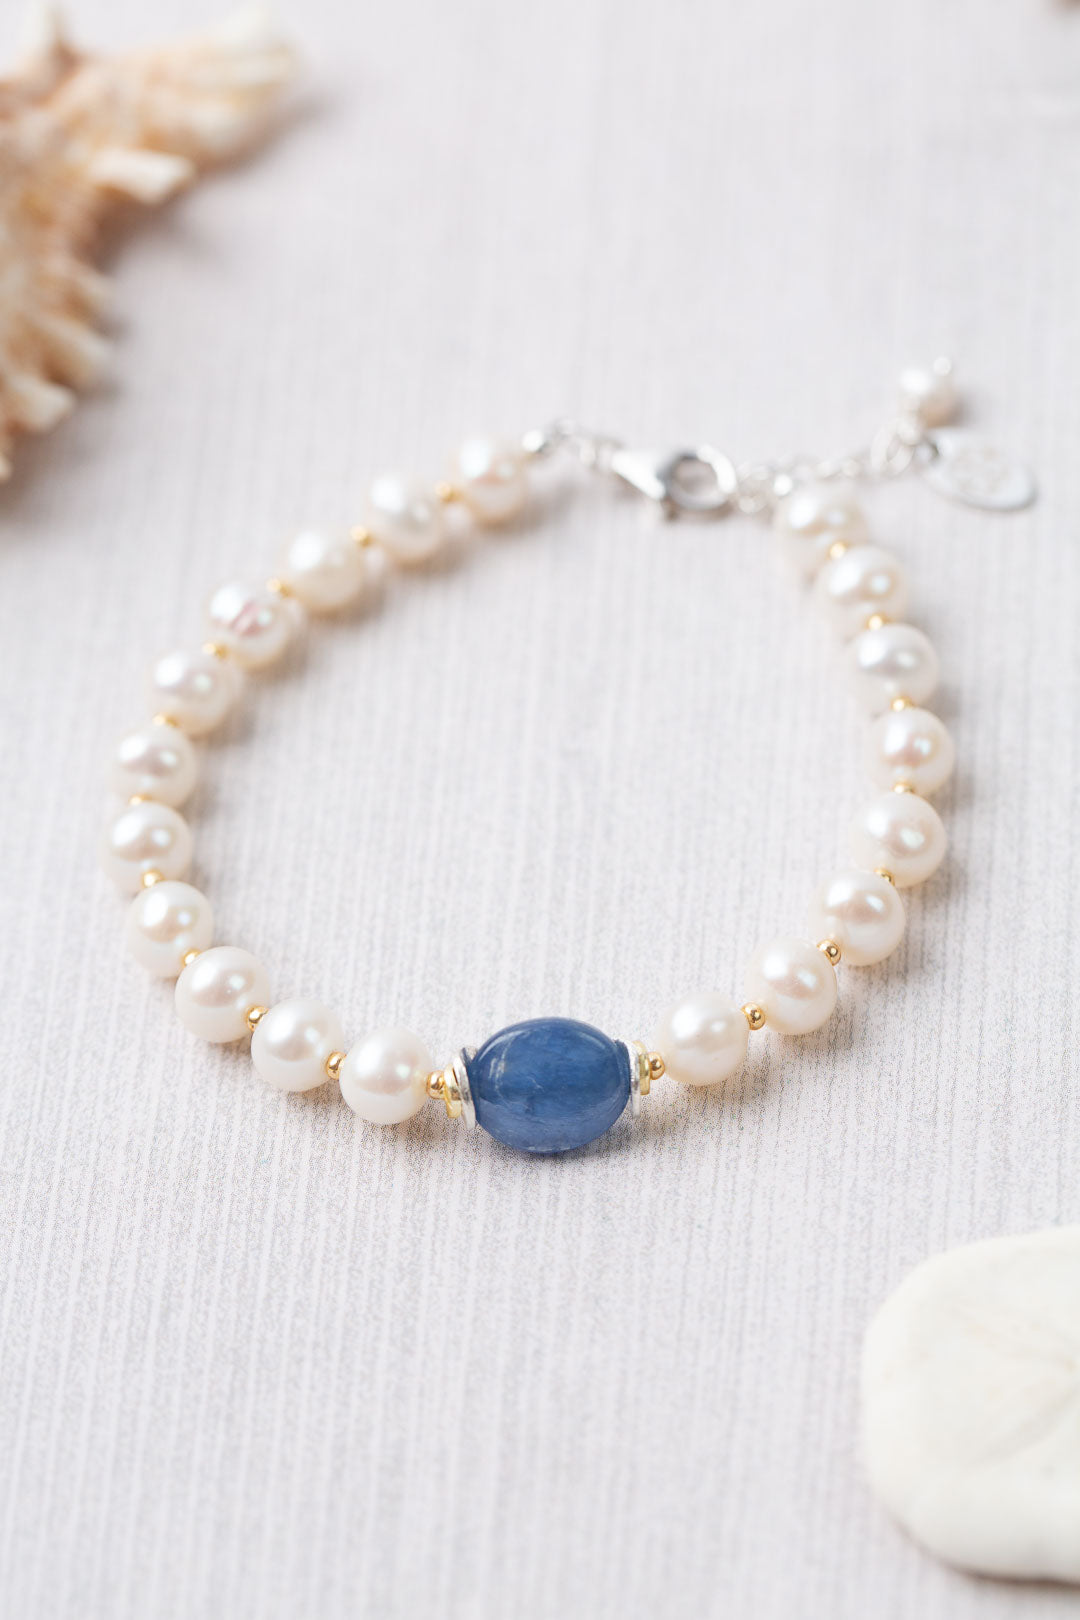 Seaside 7.5-8.5" Fresh Water Pearl, Kyanite Simple Bracelet